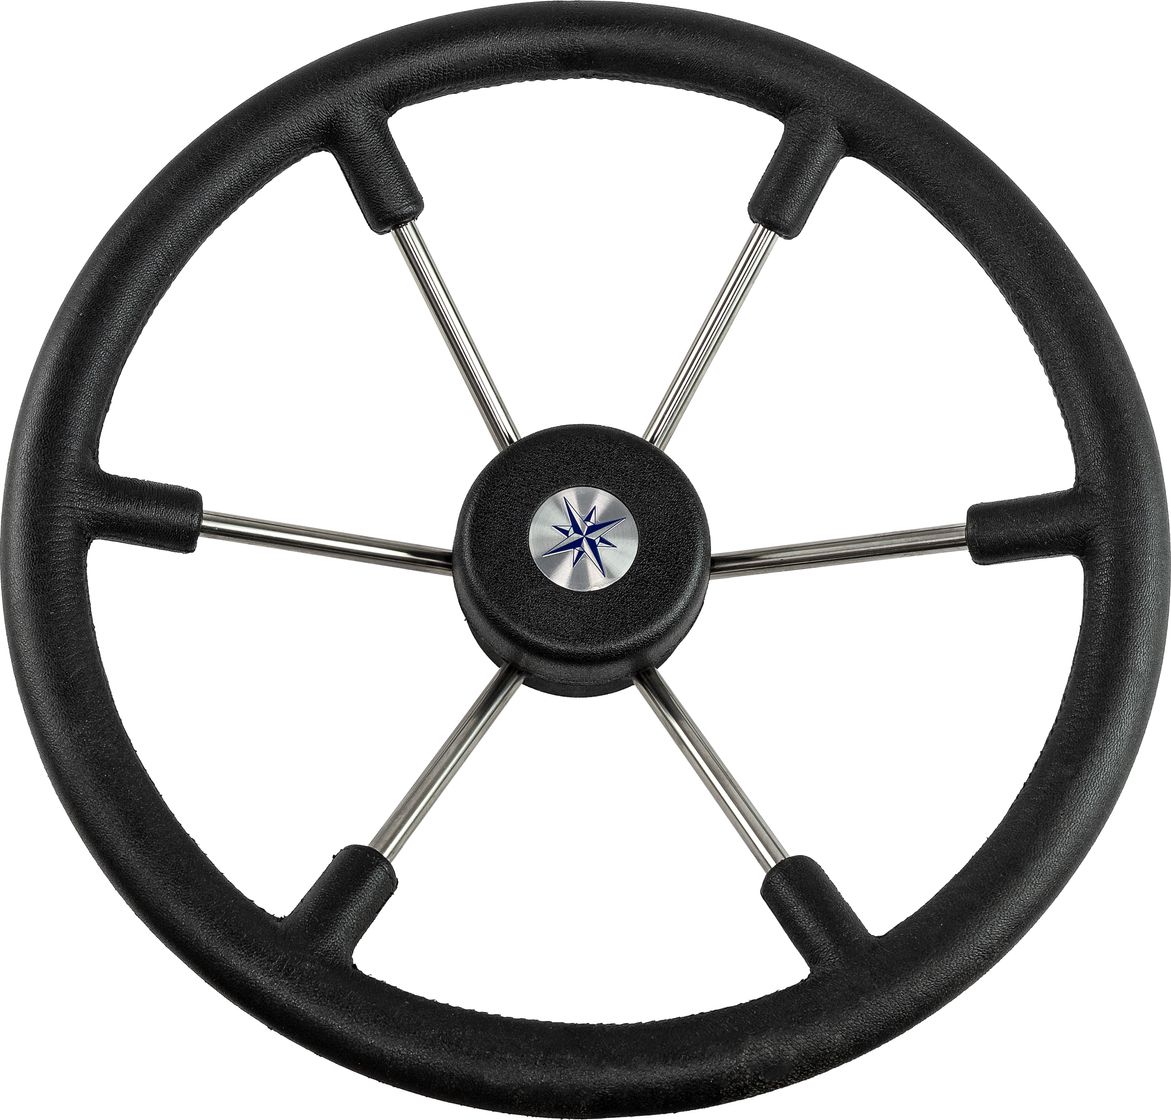 Рулевое колесо LEADER TANEGUM черный обод серебряные спицы д. 400 мм VN7400-01